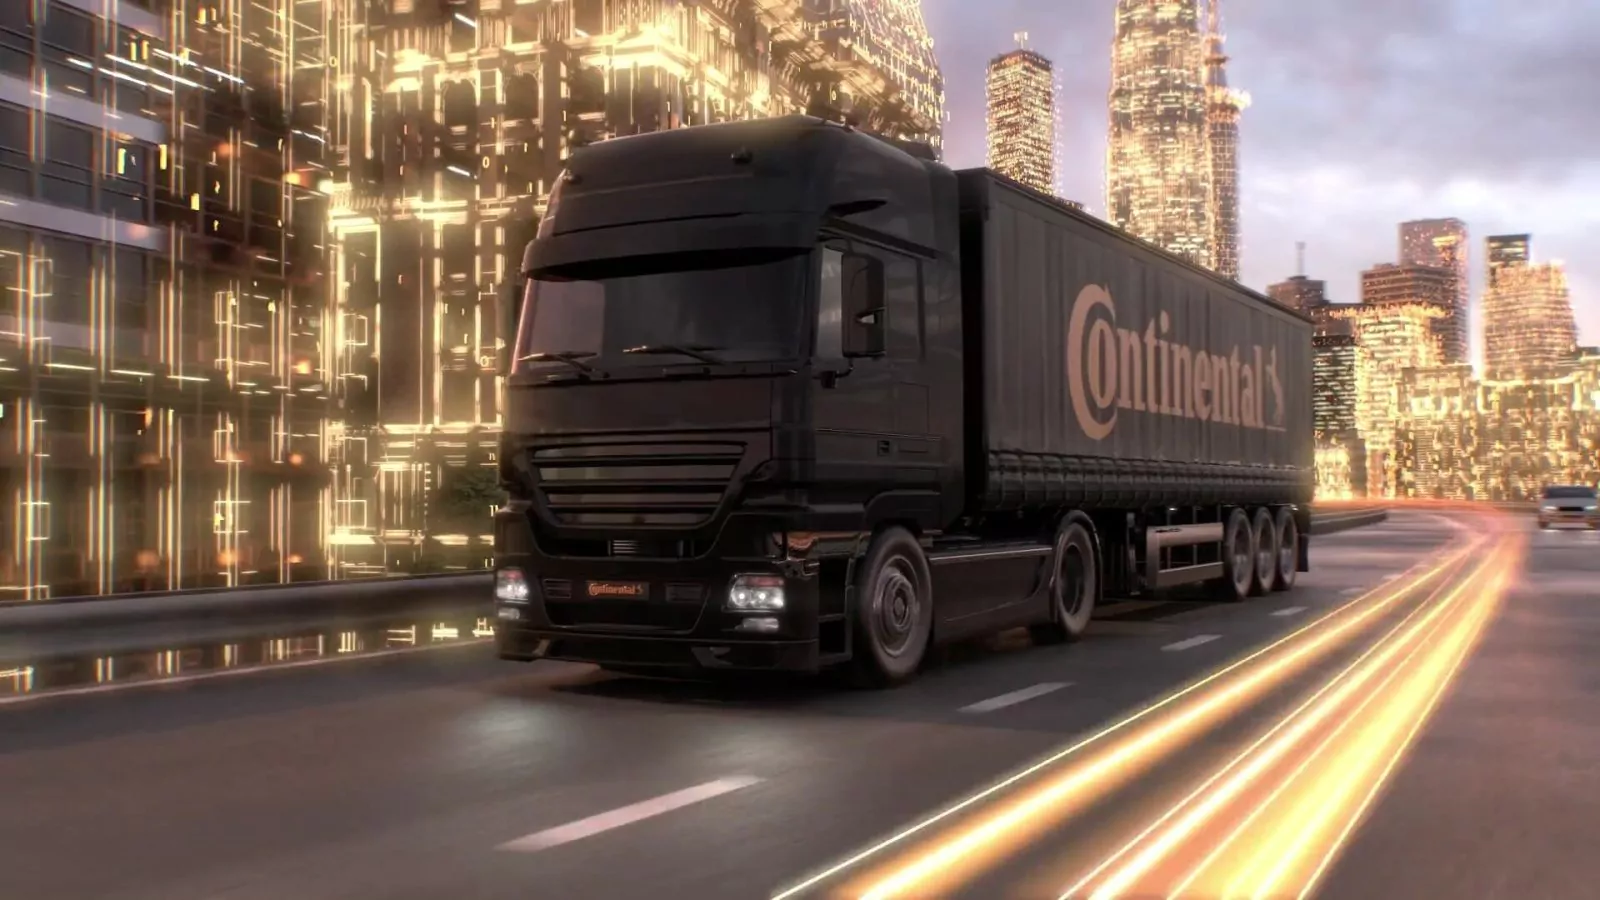 Best Company Video Gmbh Continental Reifen Deutschland Gmbh Solution Provider